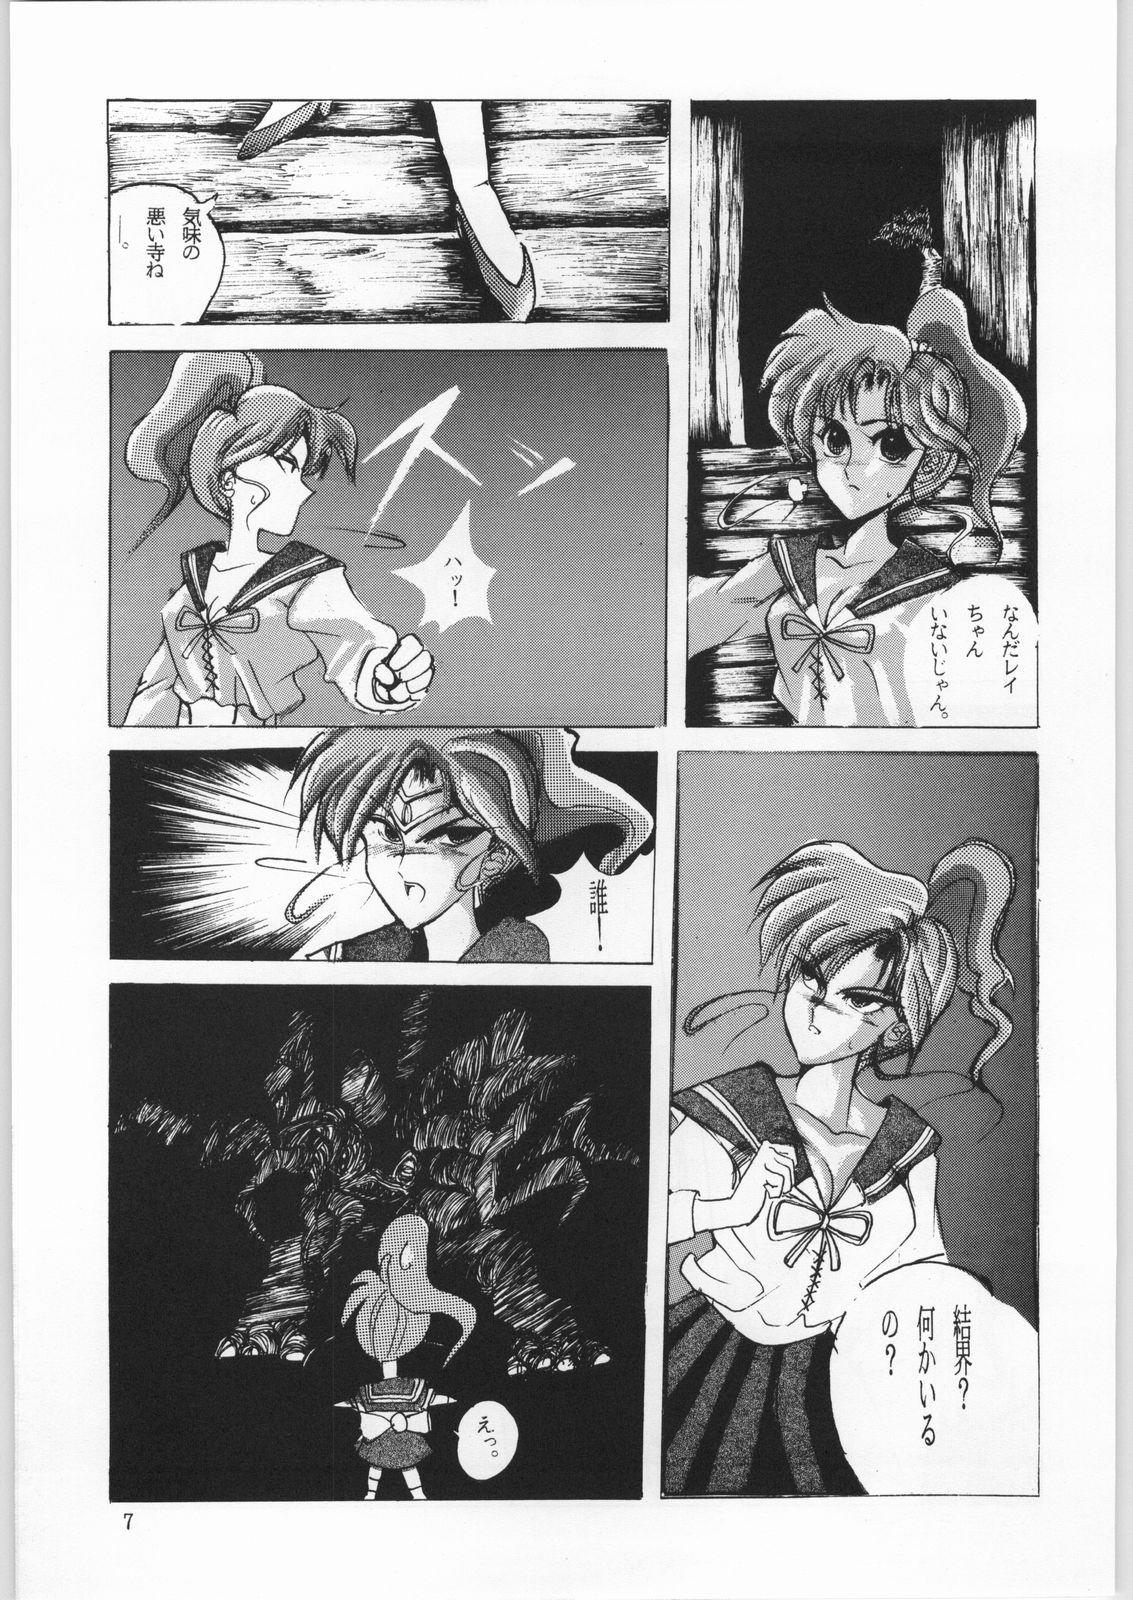 Spy Honkan Hanamura - Sailor moon Gayporn - Page 6